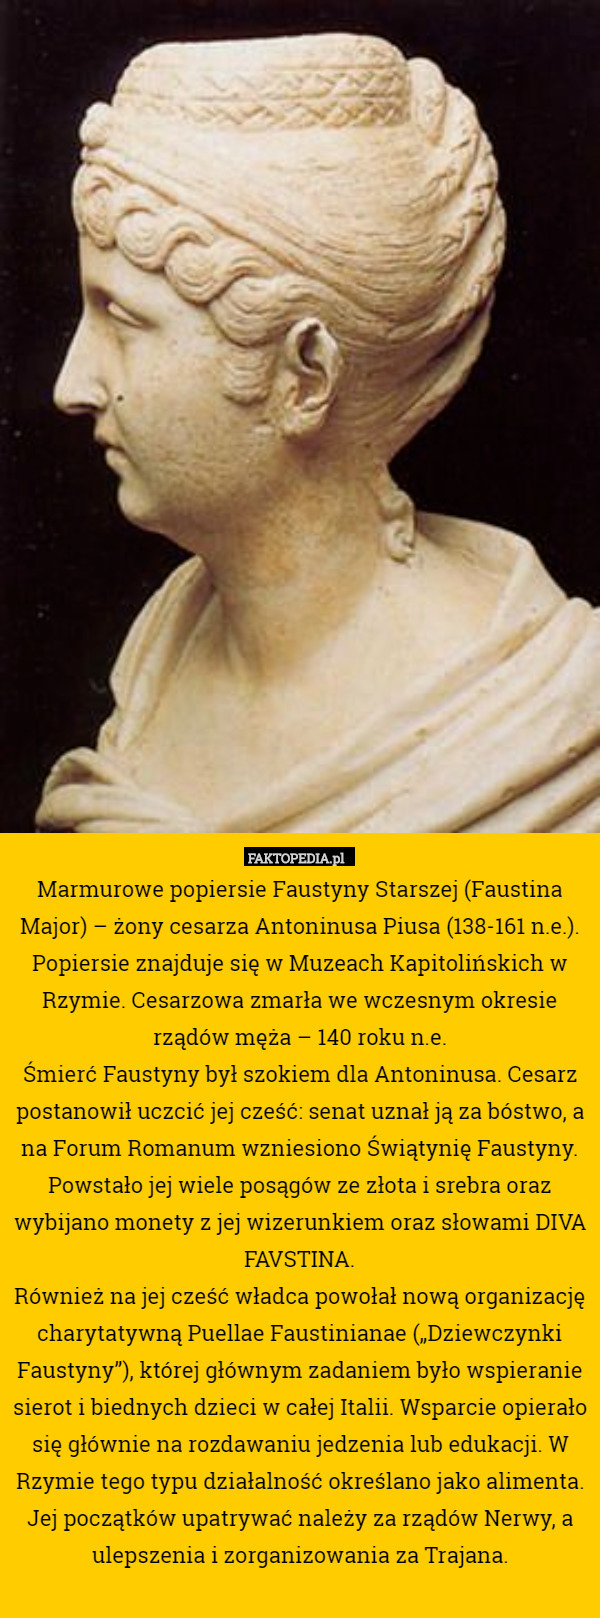 Marmurowe popiersie Faustyny Starszej (Faustina Major) – żony cesarza Antoninusa Piusa (138-161 n.e.). Popiersie znajduje się w Muzeach Kapitolińskich w Rzymie. Cesarzowa zmarła we wczesnym okresie rządów męża – 140 roku n.e.
Śmierć Faustyny był szokiem dla Antoninusa. Cesarz postanowił uczcić jej cześć: senat uznał ją za bóstwo, a na Forum Romanum wzniesiono Świątynię Faustyny. Powstało jej wiele posągów ze złota i srebra oraz wybijano monety z jej wizerunkiem oraz słowami DIVA FAVSTINA.
Również na jej cześć władca powołał nową organizację charytatywną Puellae Faustinianae („Dziewczynki Faustyny”), której głównym zadaniem było wspieranie sierot i biednych dzieci w całej Italii. Wsparcie opierało się głównie na rozdawaniu jedzenia lub edukacji. W Rzymie tego typu działalność określano jako alimenta. Jej początków upatrywać należy za rządów Nerwy, a ulepszenia i zorganizowania za Trajana. 